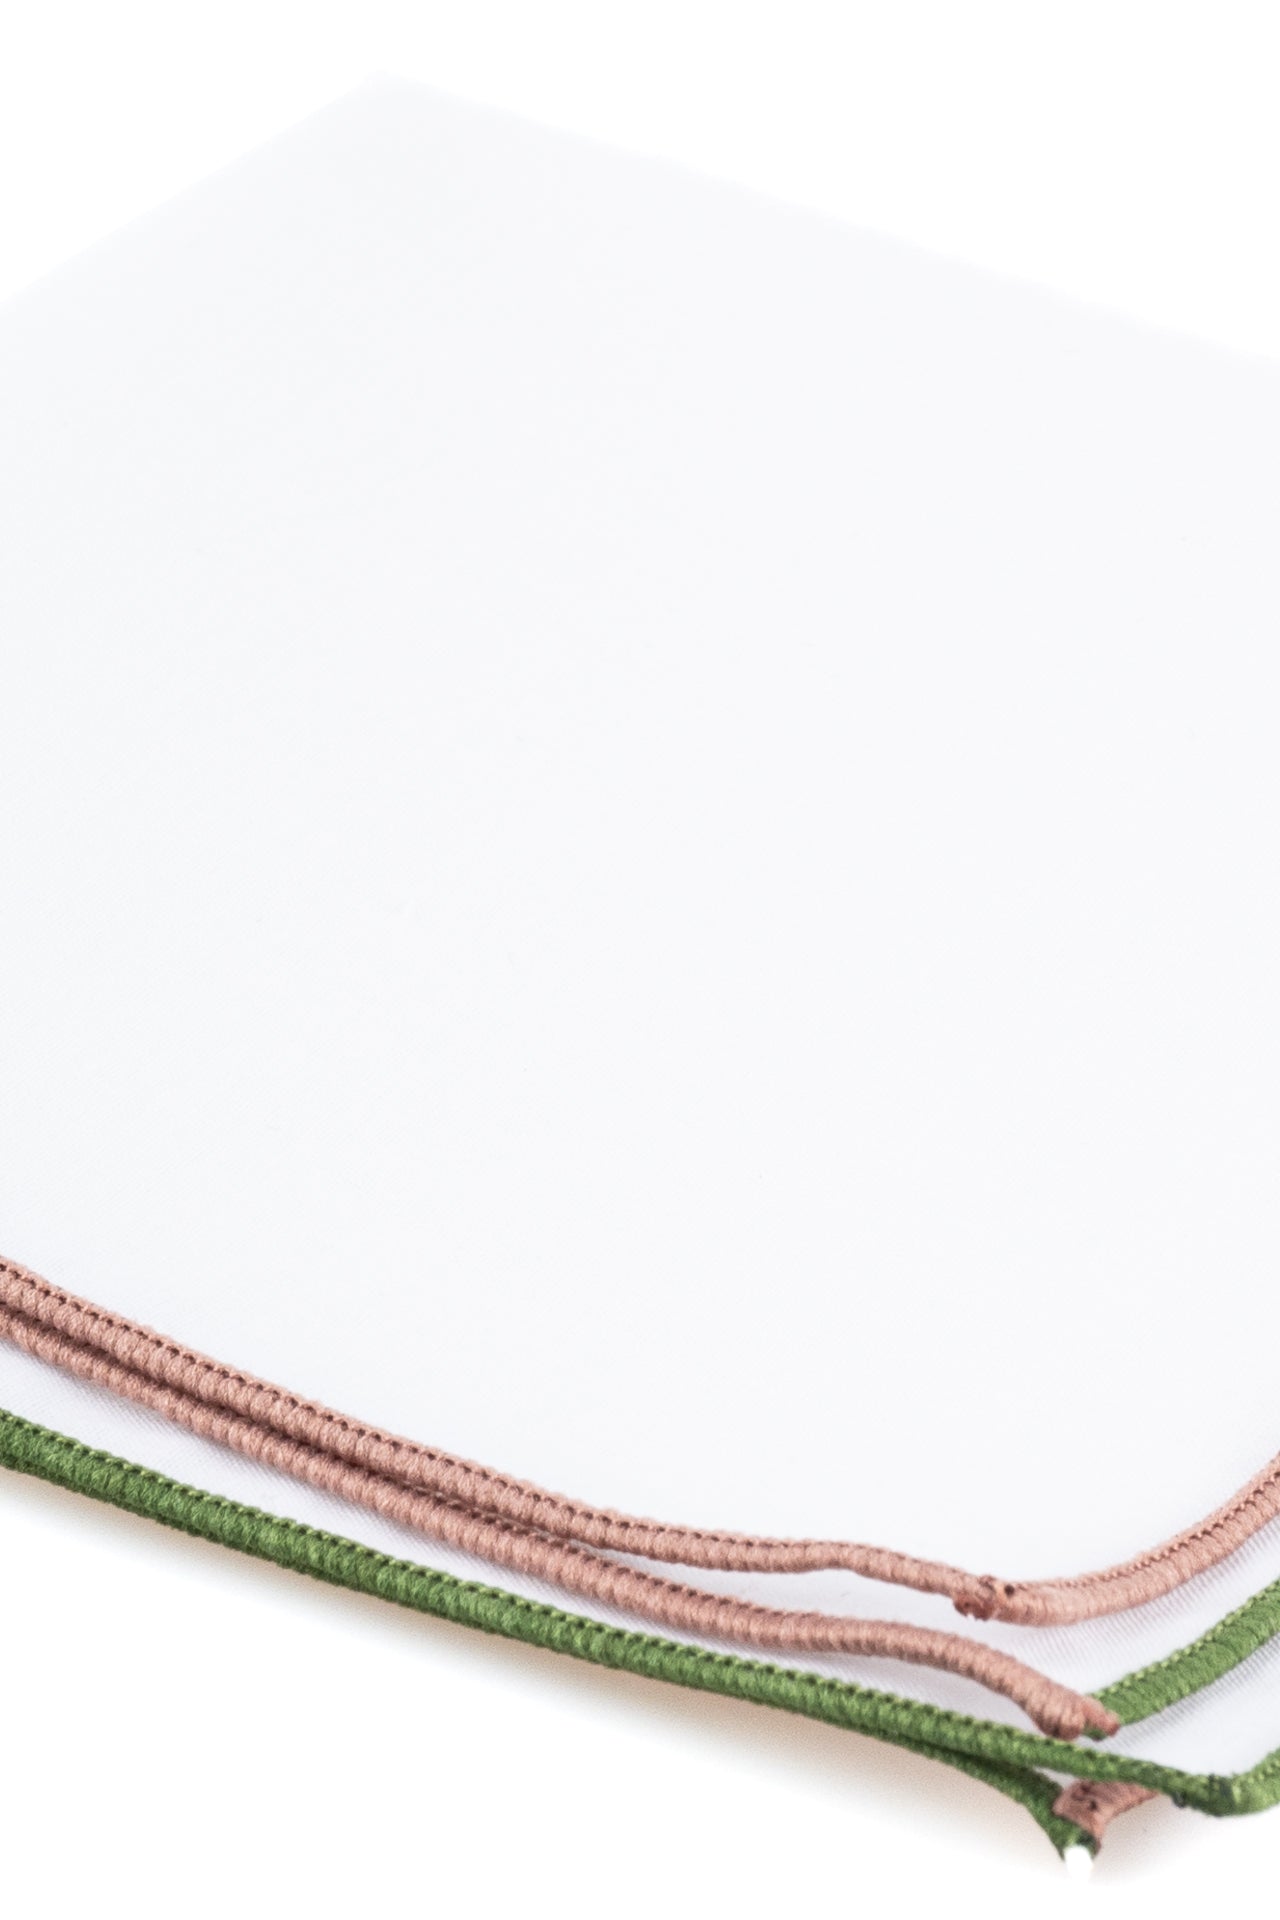 ΑΝΔΡΙΚΟ ΜΑΝΤΗΛΙ ΠΟΣΕΤ PORTOBELLO'S λευκό χρώμα με πράσινη & καφέ μπορντούρα